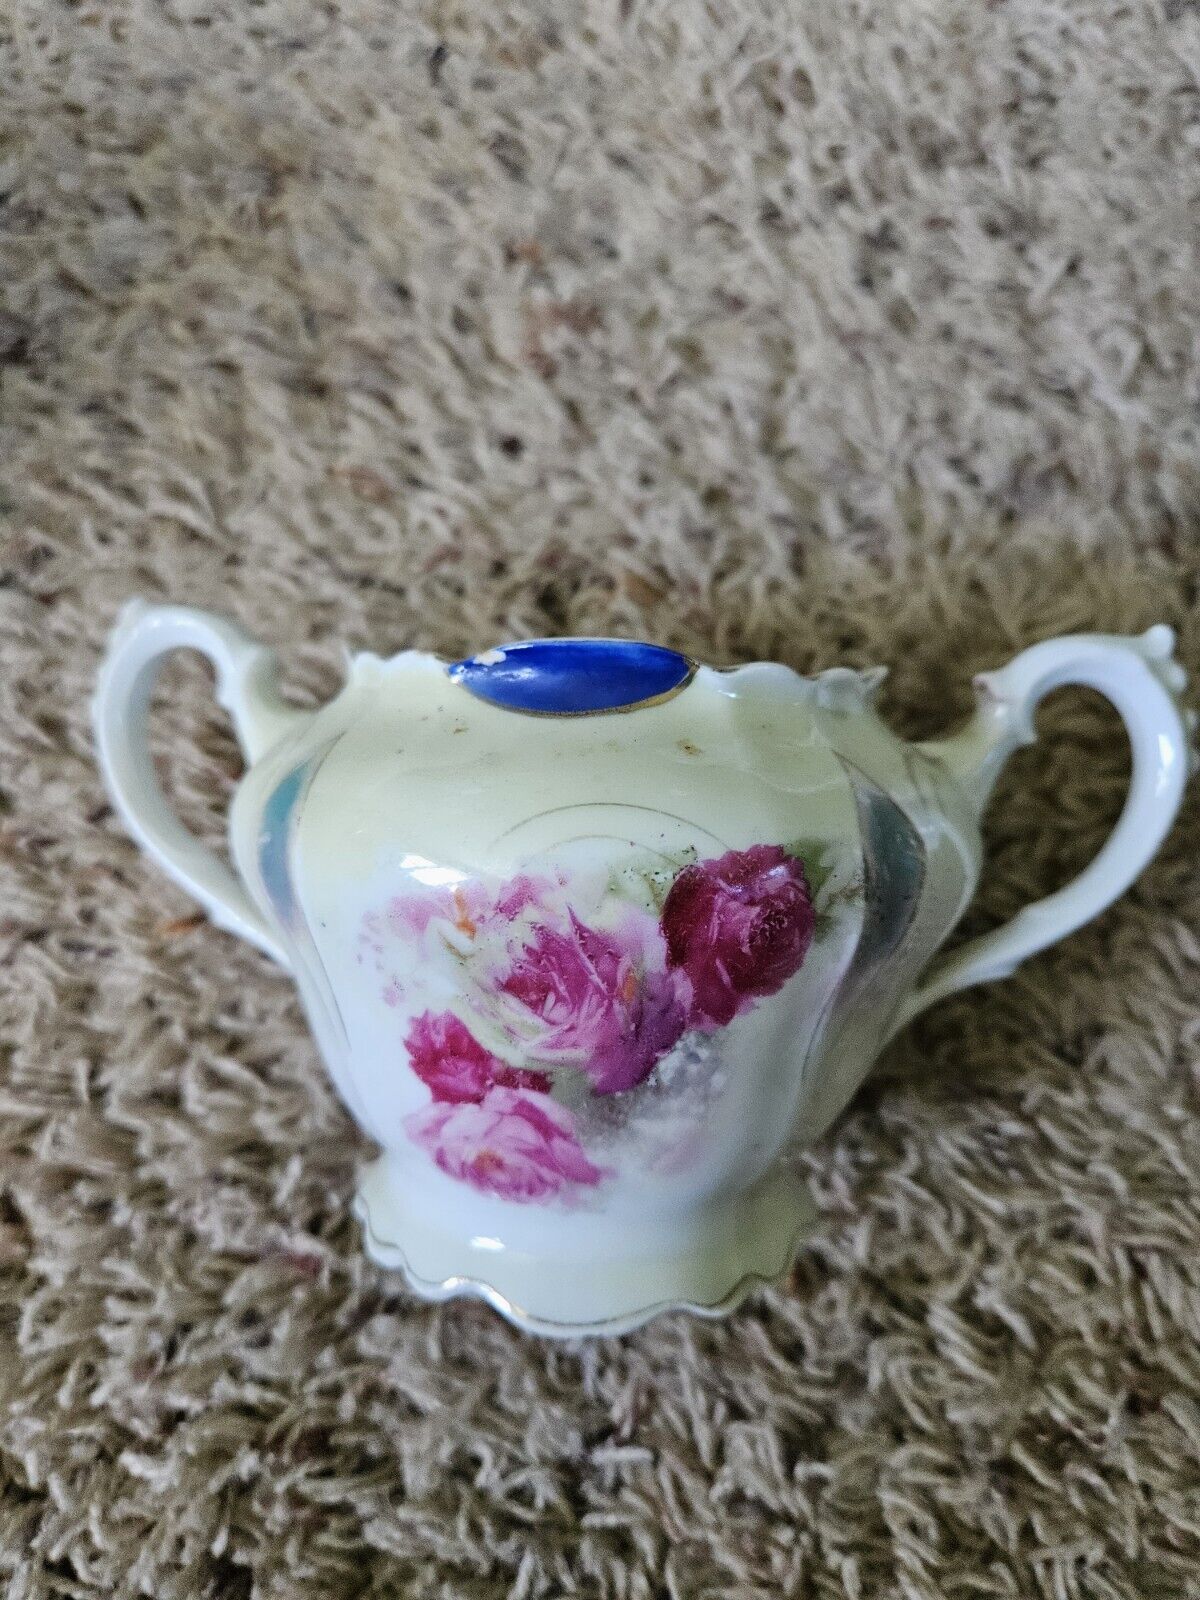 VTG/Antique Germany Porcelain Sugar Bowl No Lid Purple Lusterware Pink Roses 